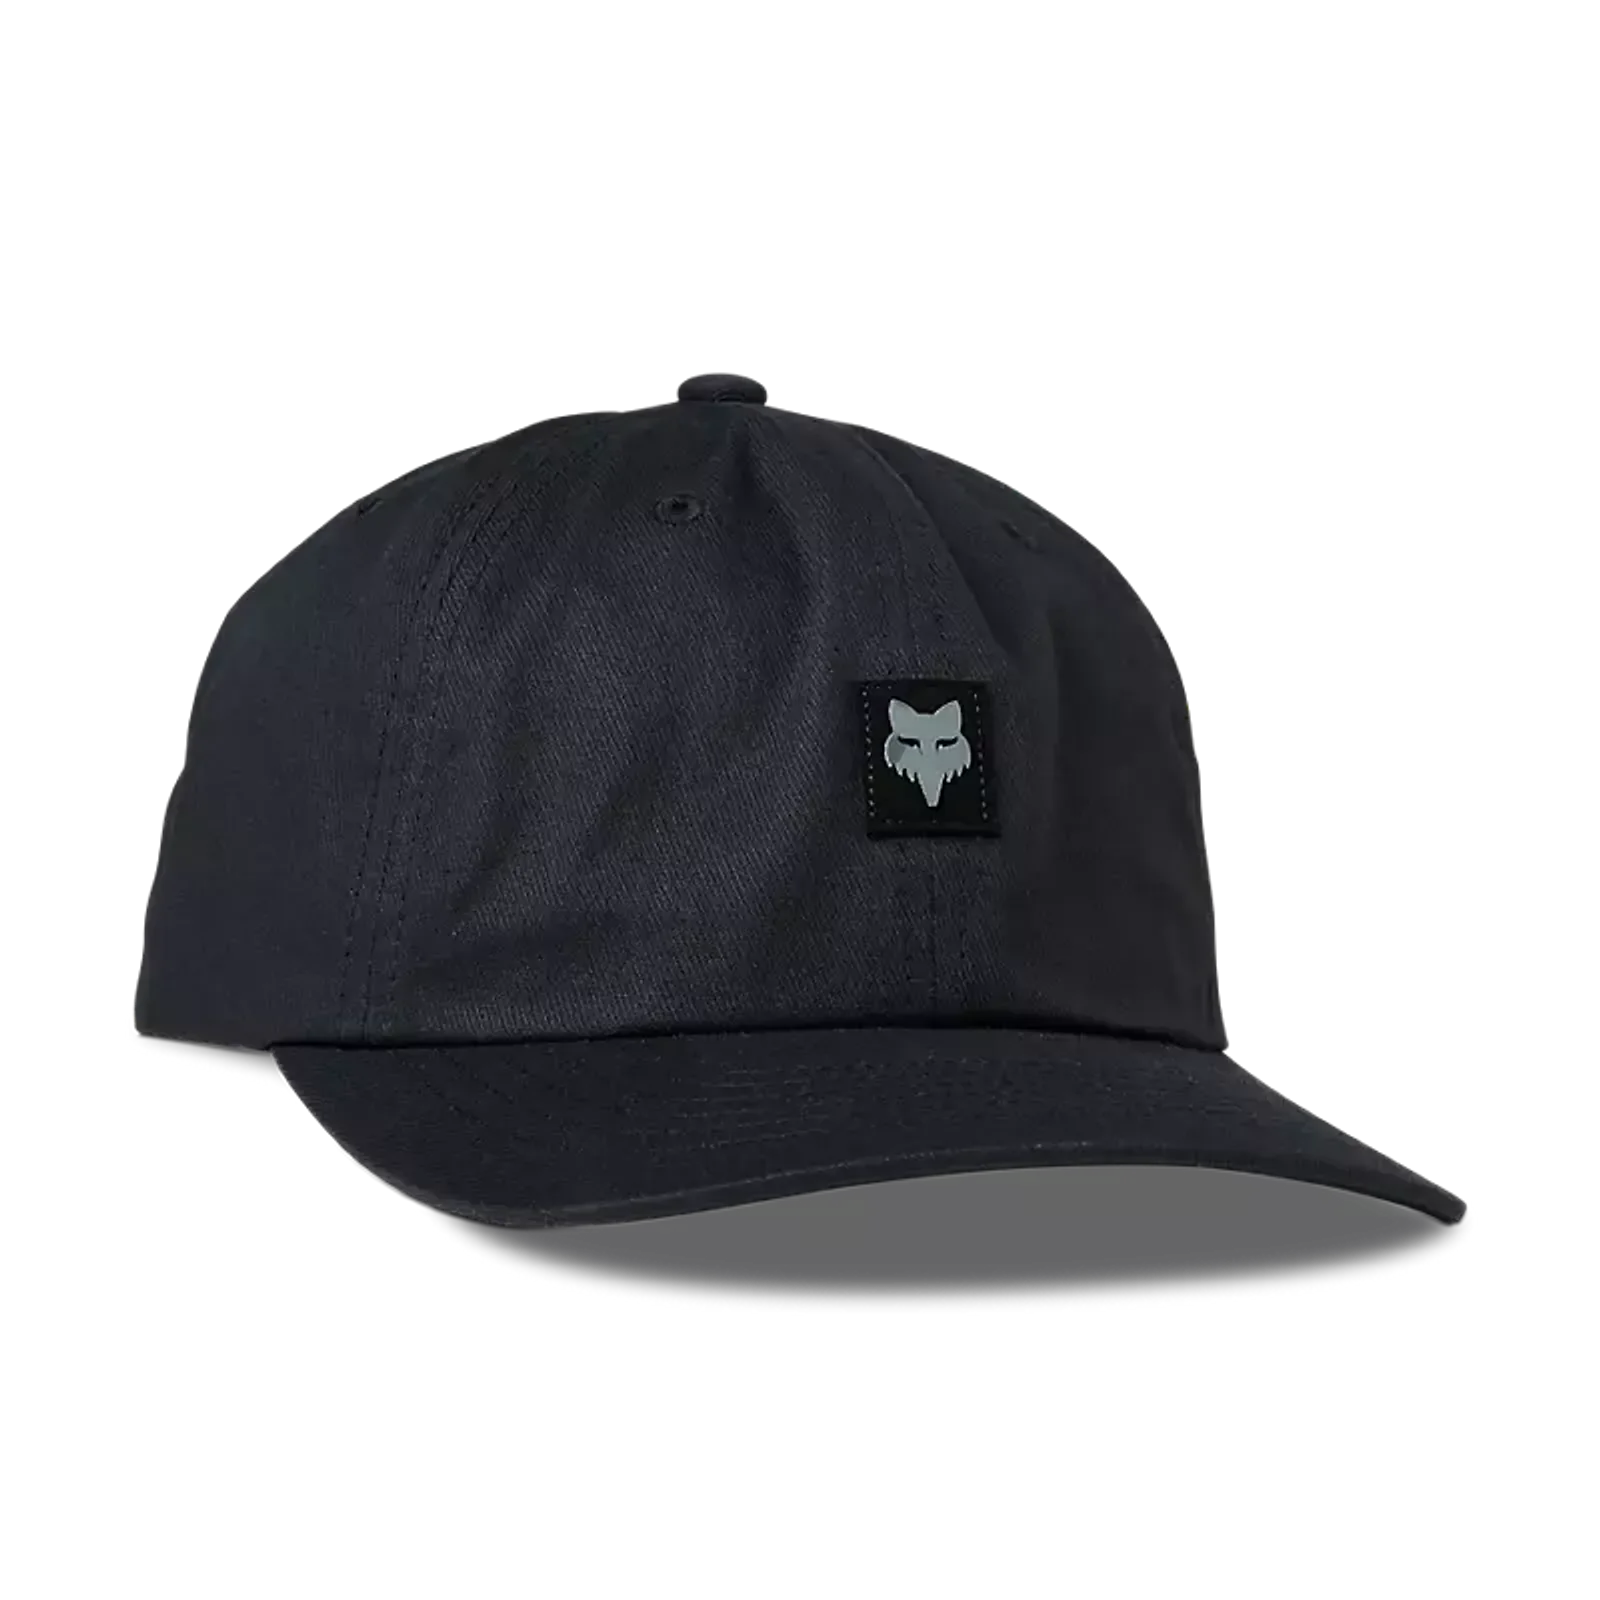 Level Up Adjustable Hat (Black)